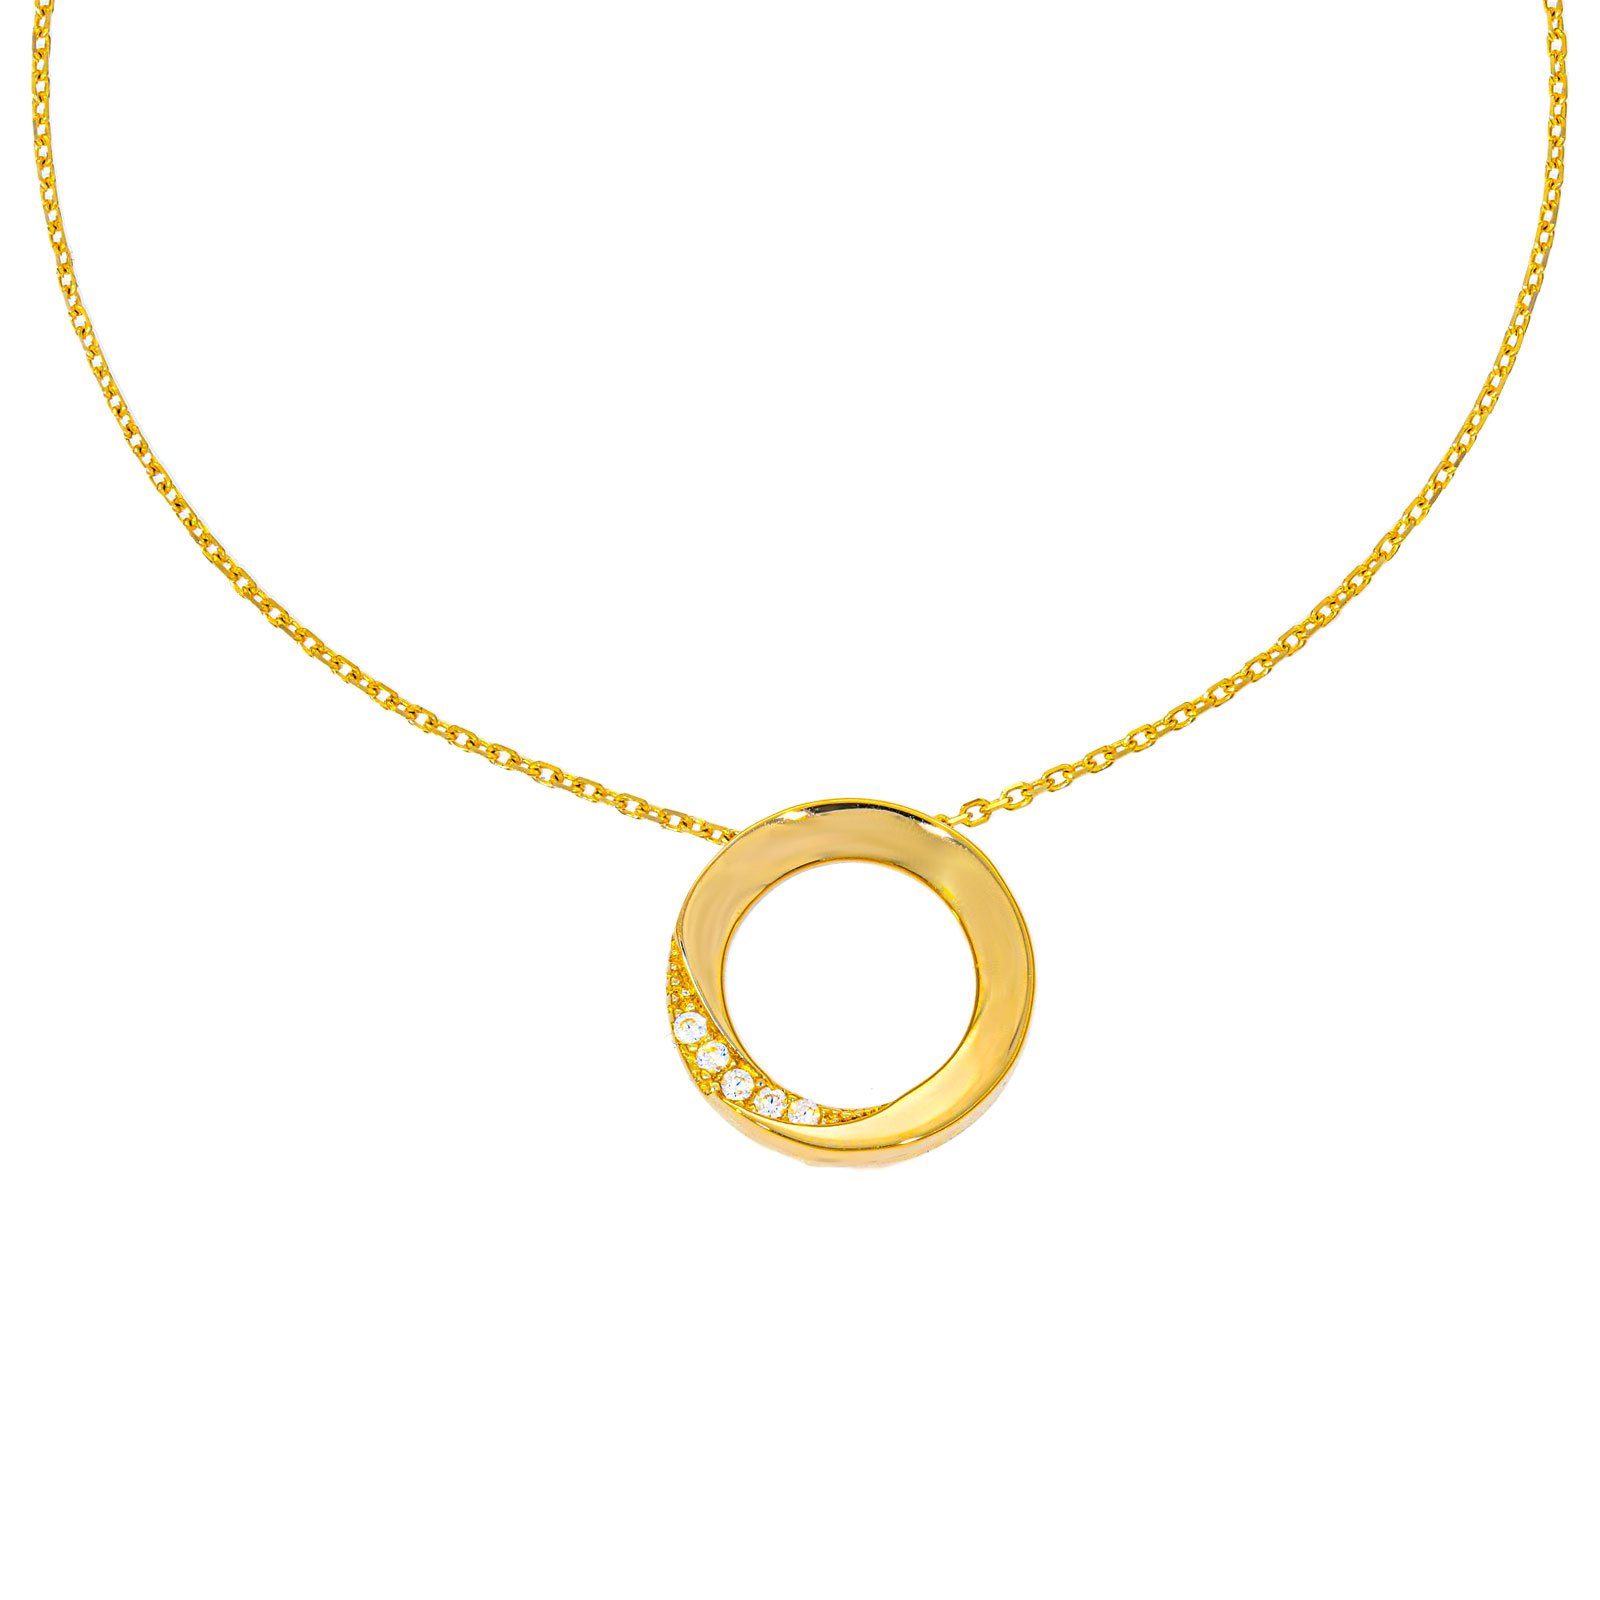 Stella-Jewellery Collier 585 Gold Kette mit Kreis Anhänger Zirkonia Model 2  (inkl. Etui), 585 Gelbgold 7 Plättchen